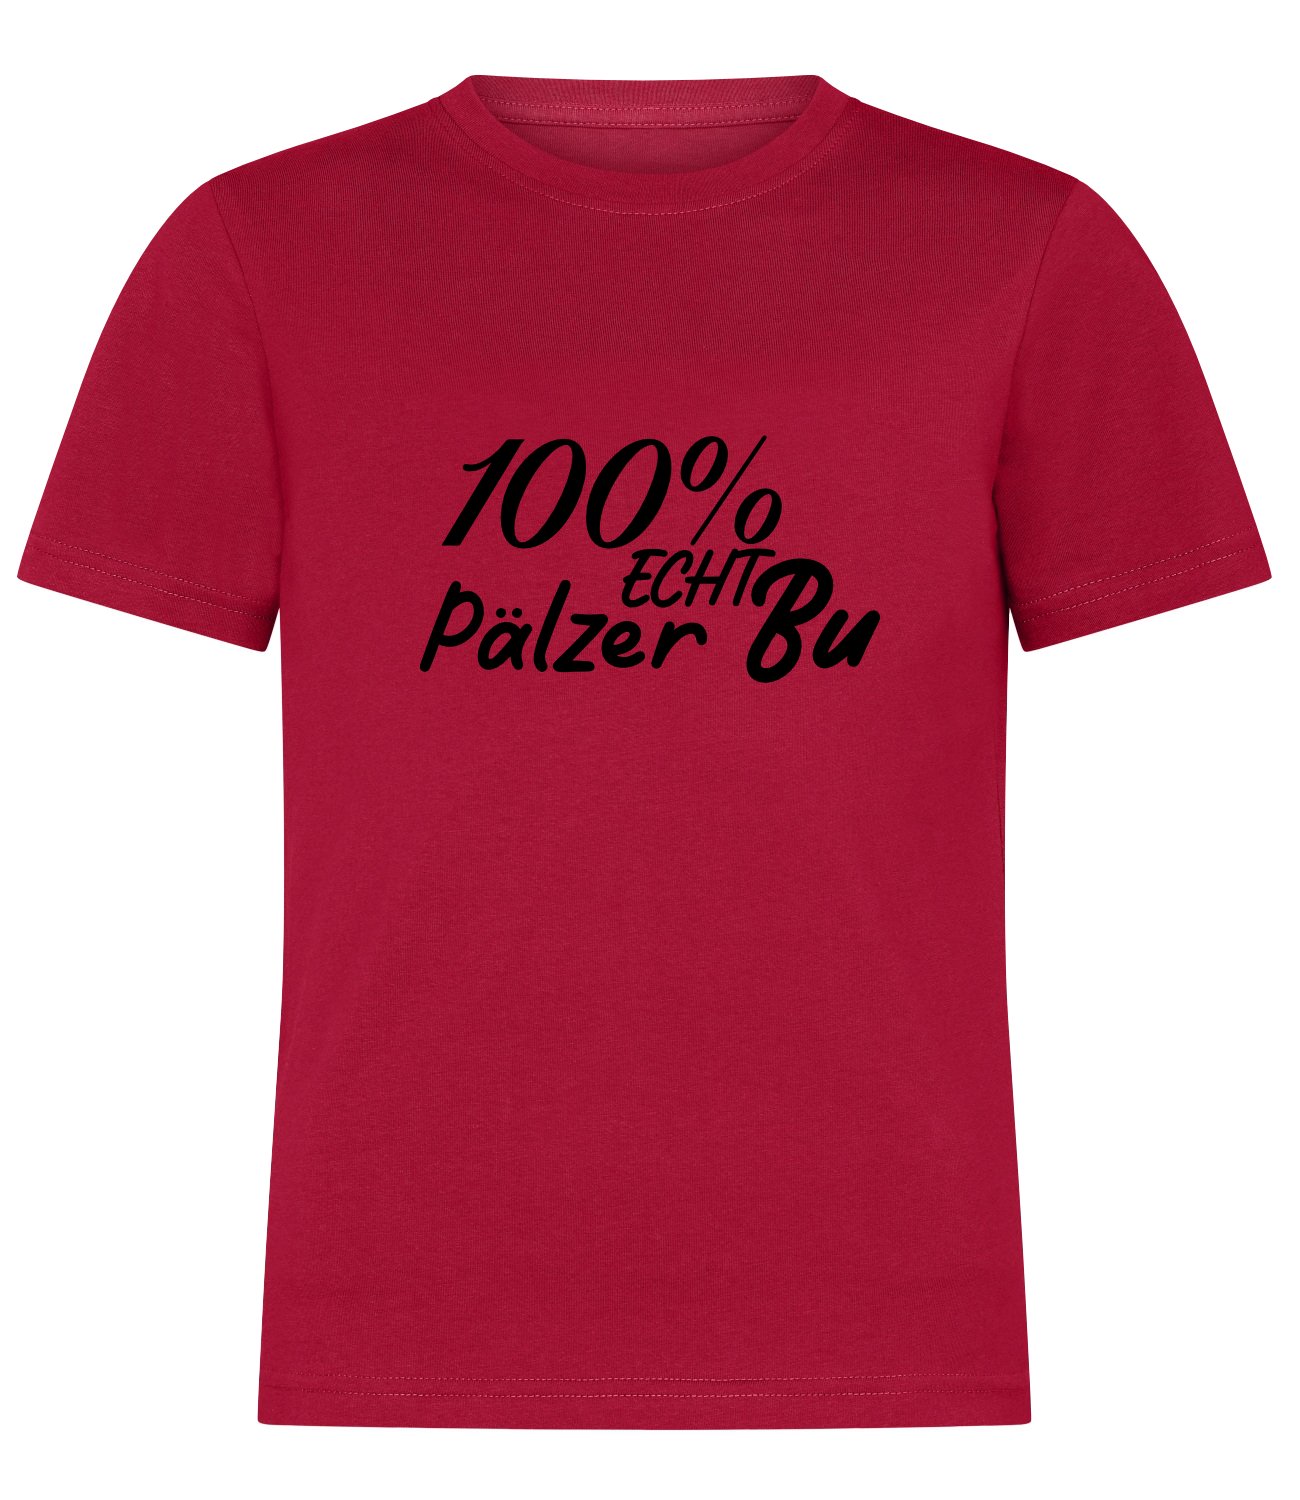 KIDS pREHmium Shirt - 100% Pälzer Bu